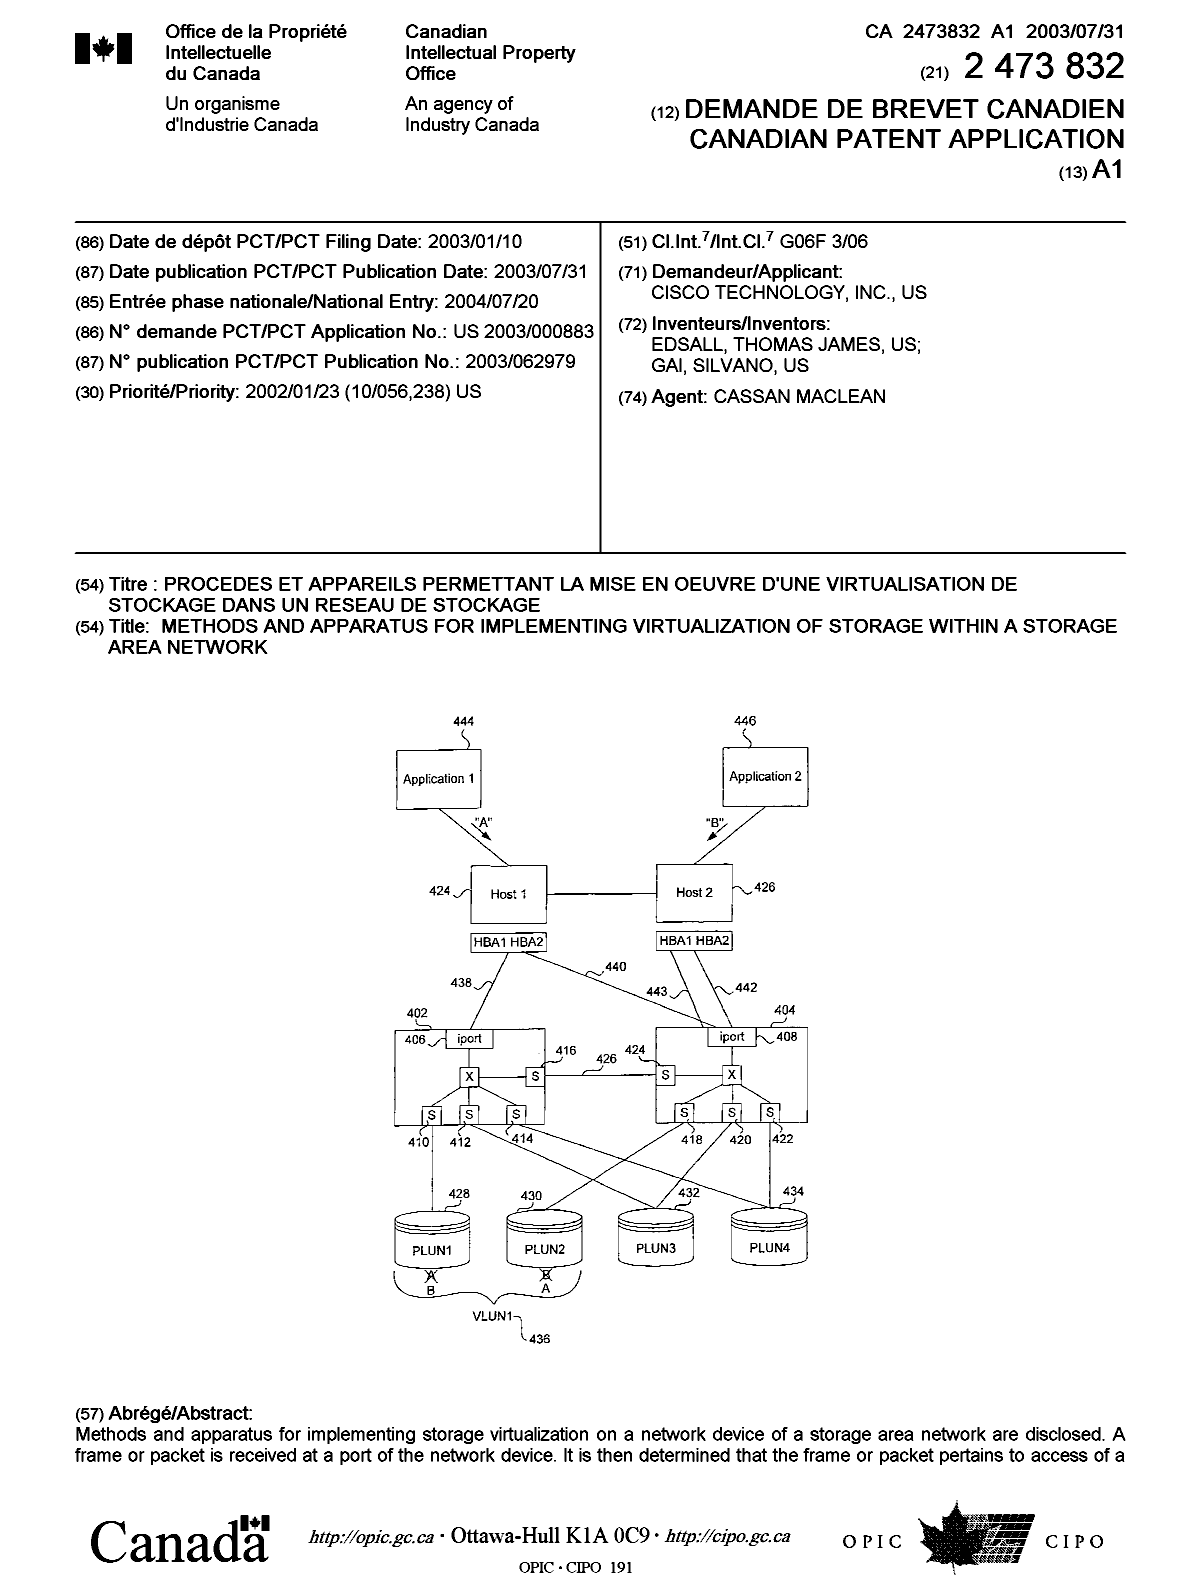 Document de brevet canadien 2473832. Page couverture 20040924. Image 1 de 2